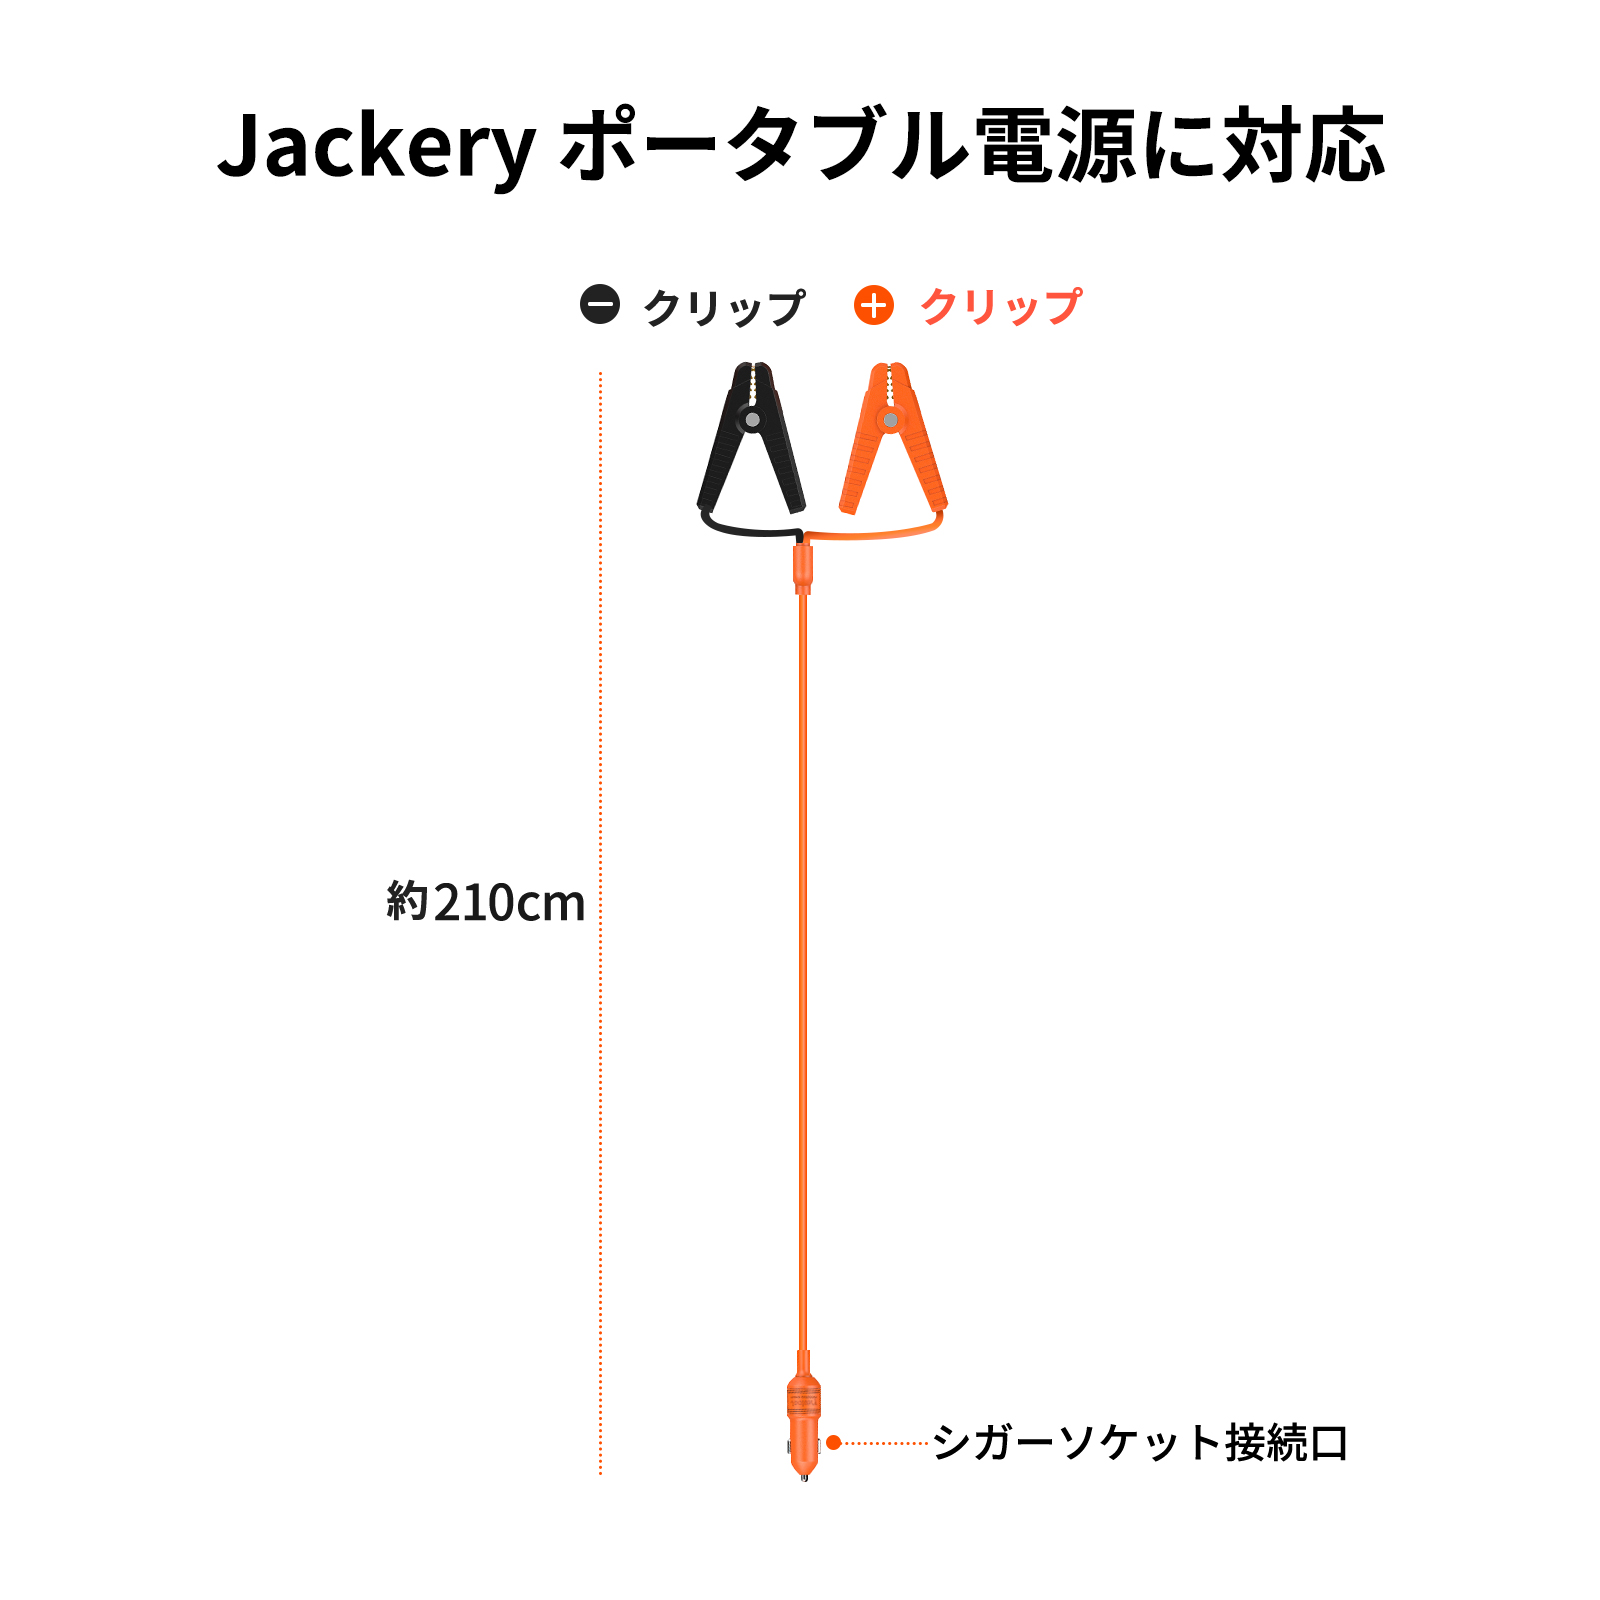 Jackery 12V 自動車用バッテリー充電ケーブルはJackeryポータブル電源に対応